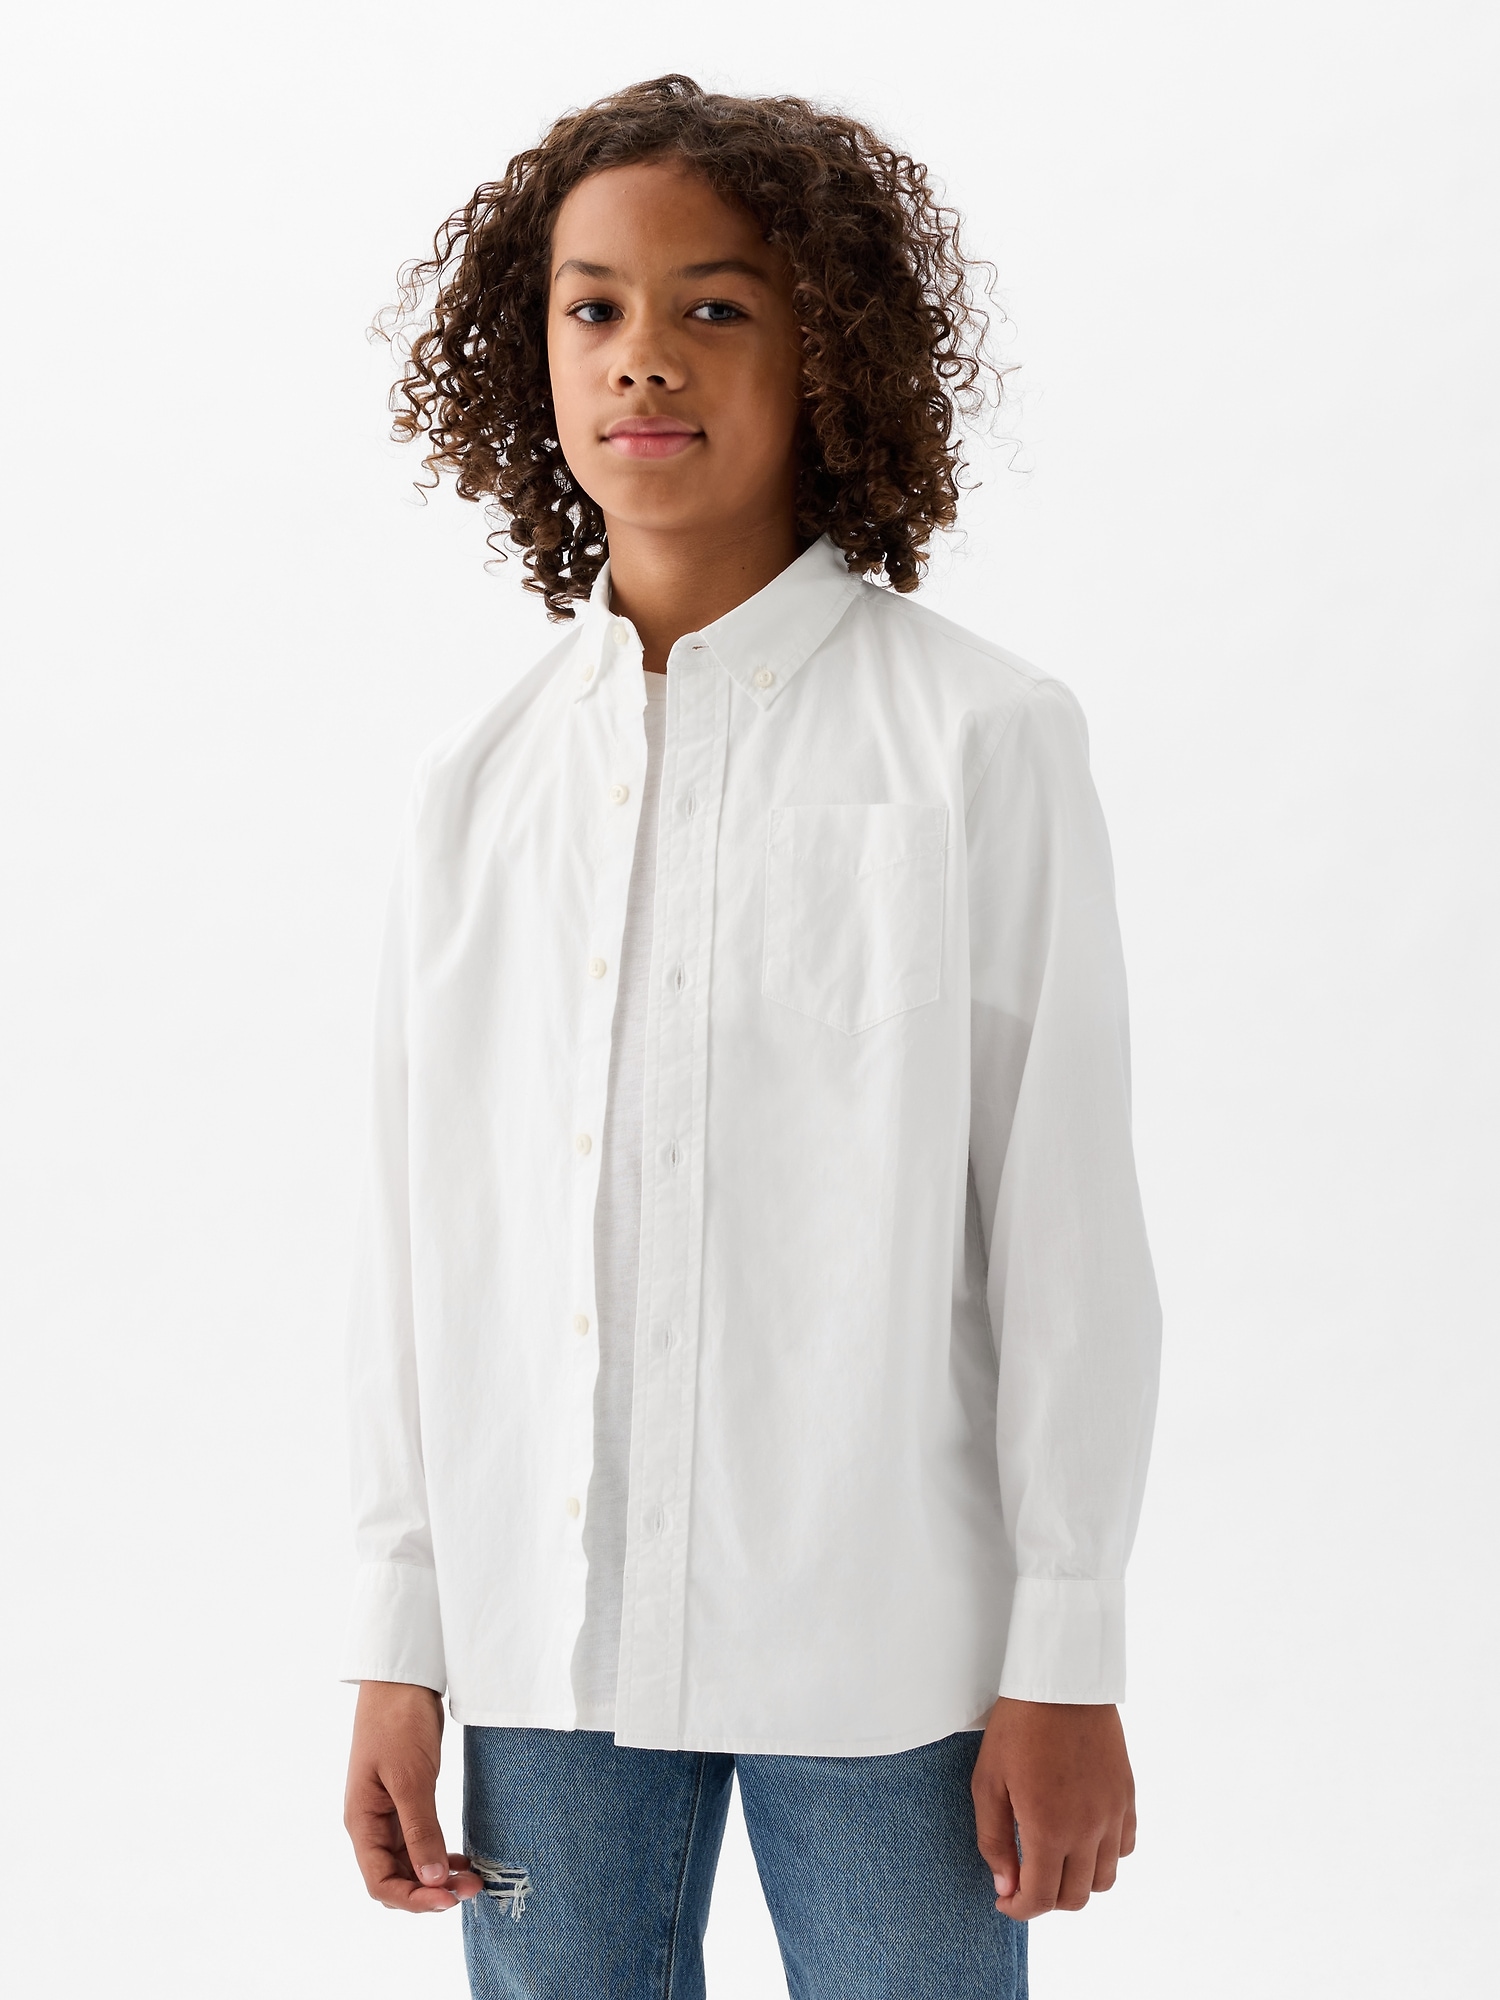 Kids Poplin Button-Up Shirt